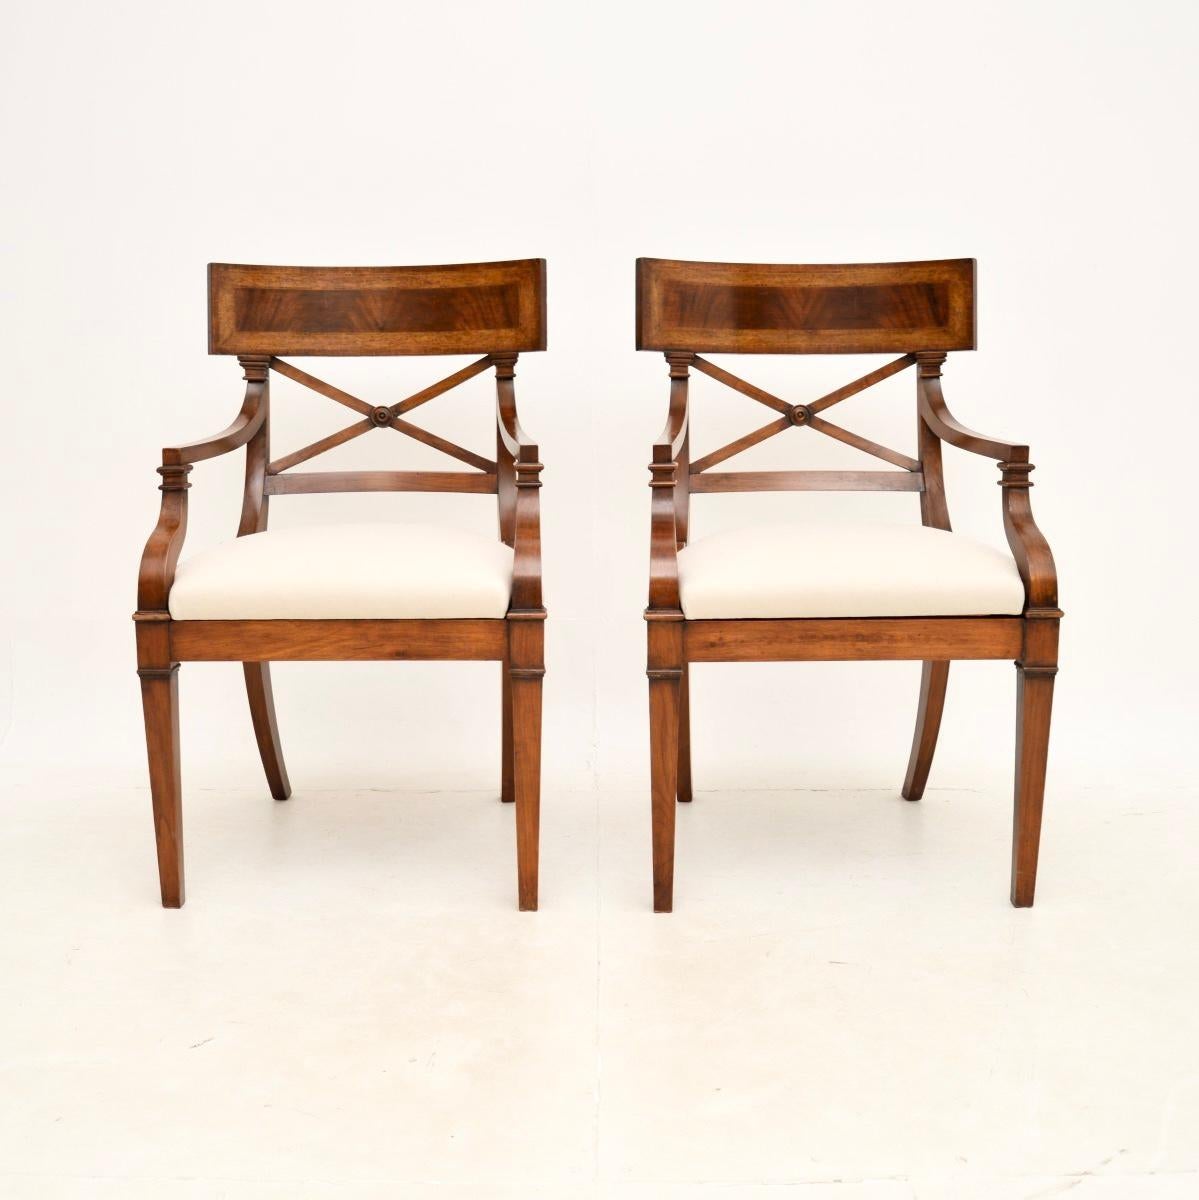 Ein schickes und sehr gut verarbeitetes Paar antiker Sessel im Regency-Stil. Sie wurden in England hergestellt und stammen etwa aus den 1950er Jahren.

Die Qualität ist hervorragend, die Trafalgar-Rückenlehnen sind wunderschön verarbeitet und mit